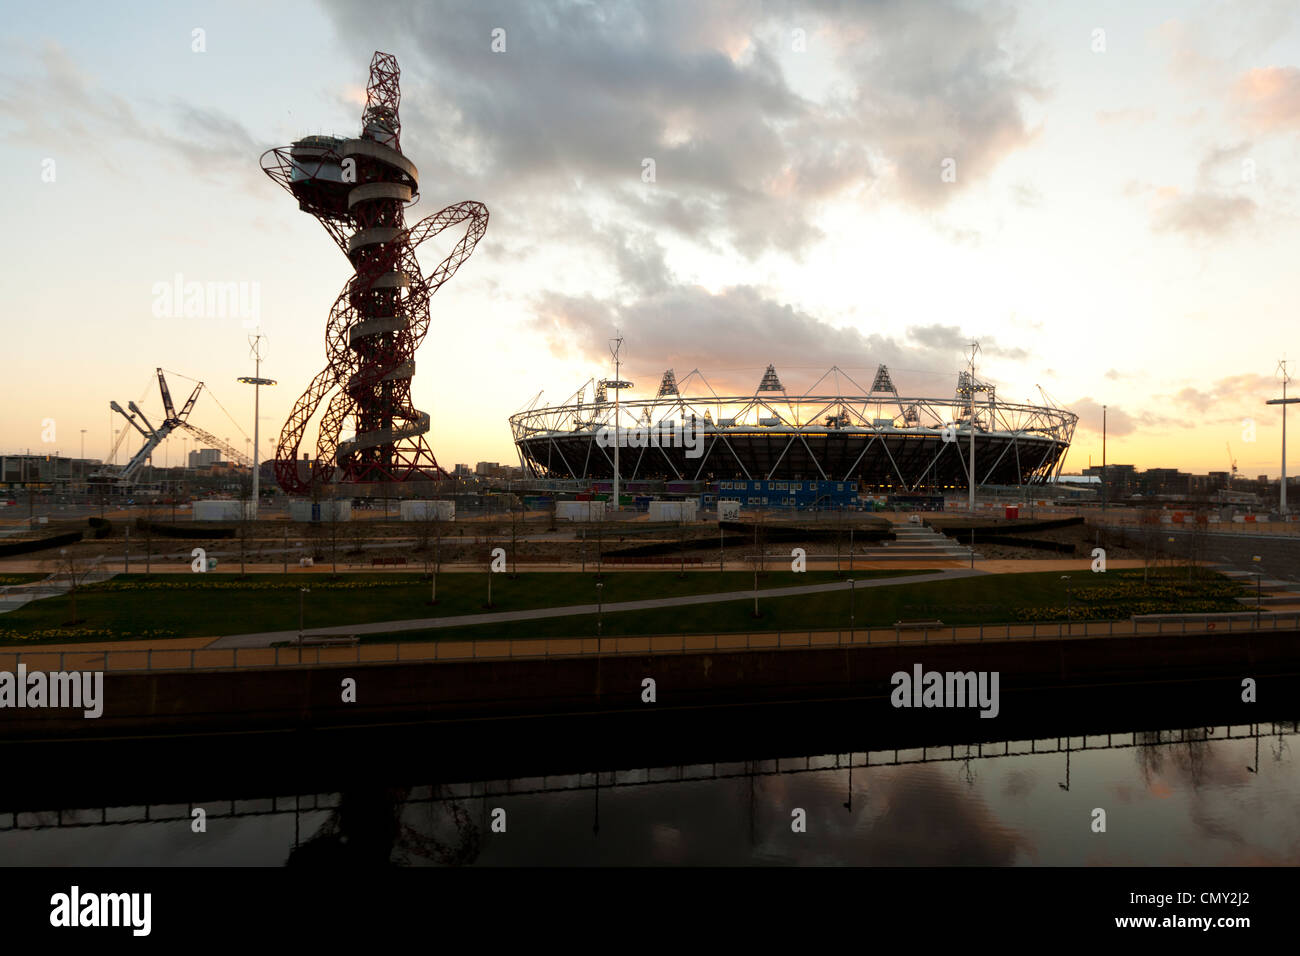 Coucher de soleil sur l'ArcelorMittal Orbit sculpture & le stade olympique, le Parc Olympique, Londres, Angleterre, Royaume-Uni. Banque D'Images